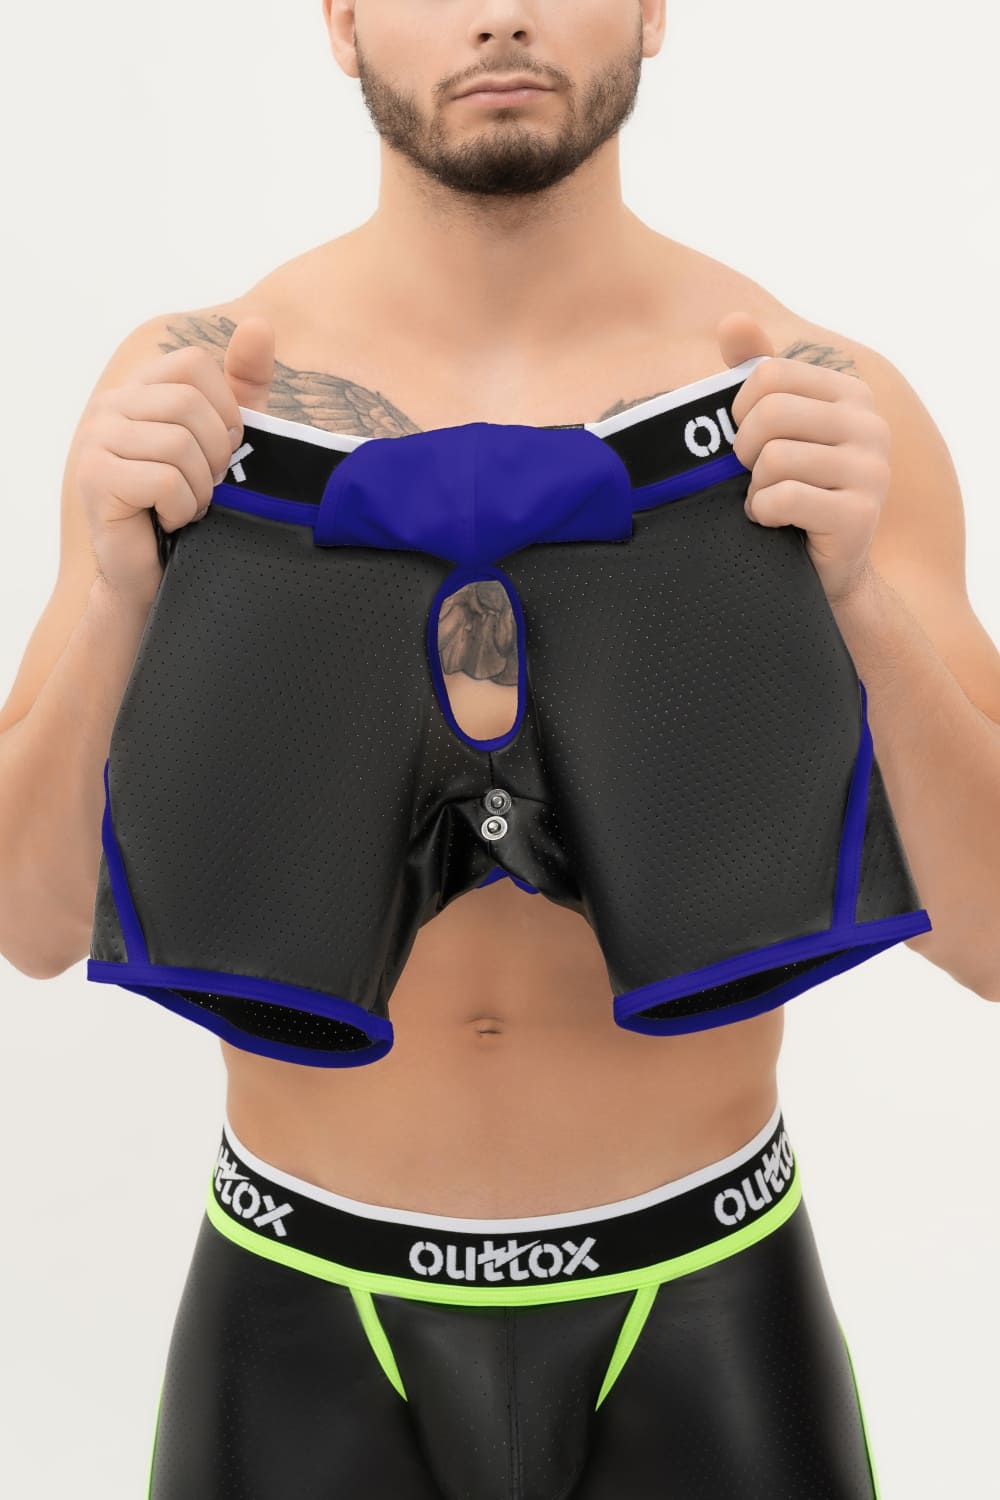 Outtox. Shorts mit offenem Rücken und Druckknopf-Codpiece. Schwarz+Blau „Royal“